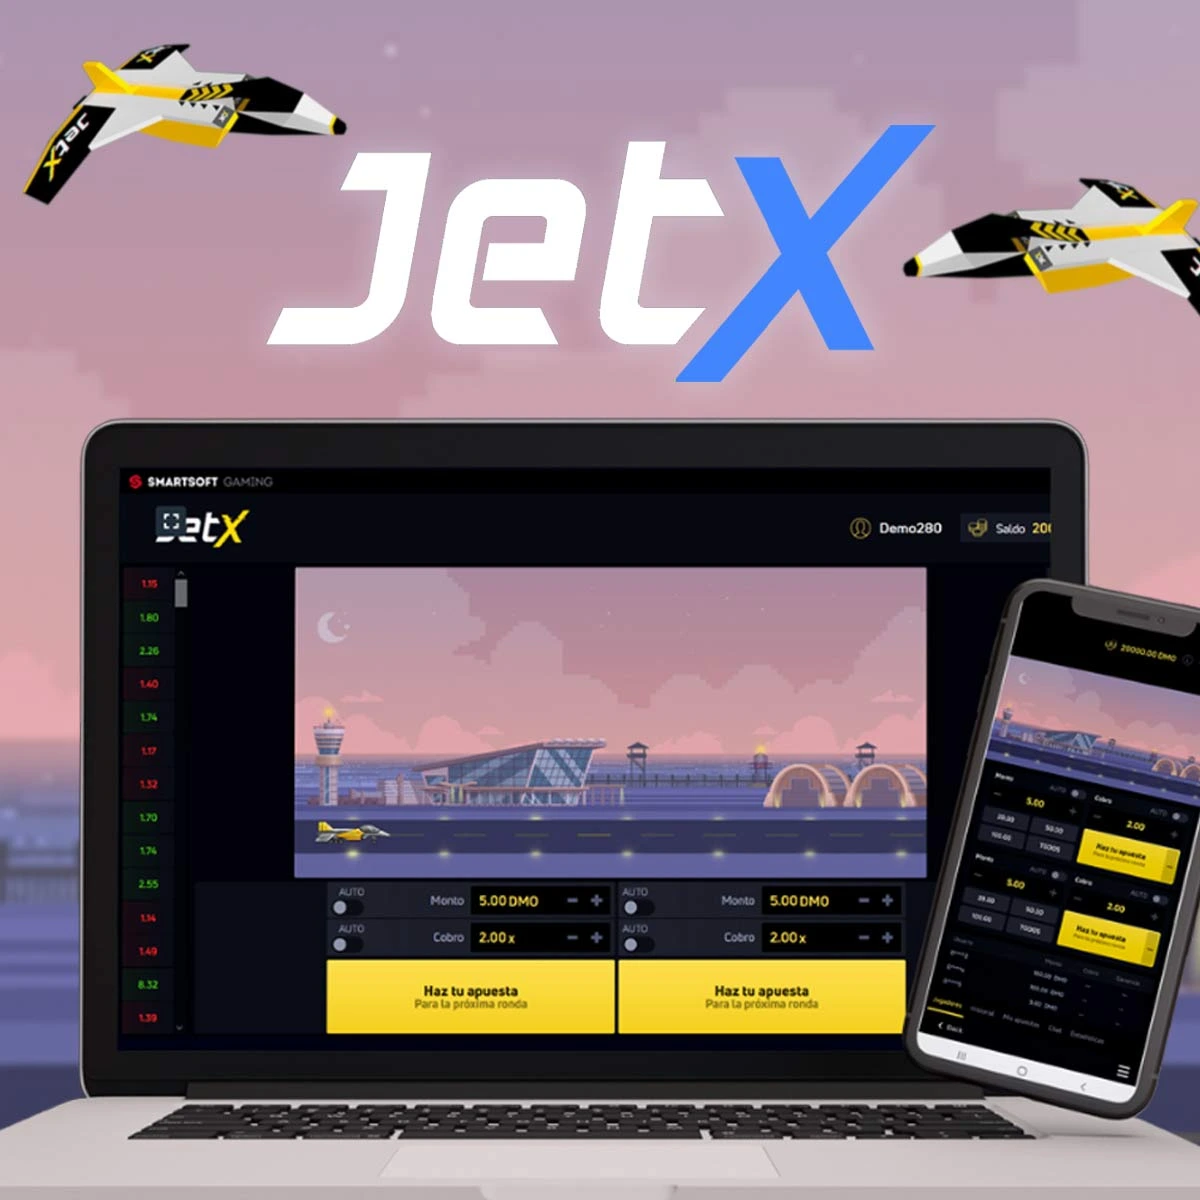 ¿Hay alguna forma de encontrar la estrategia en el juego JetX en la página web de 1win?